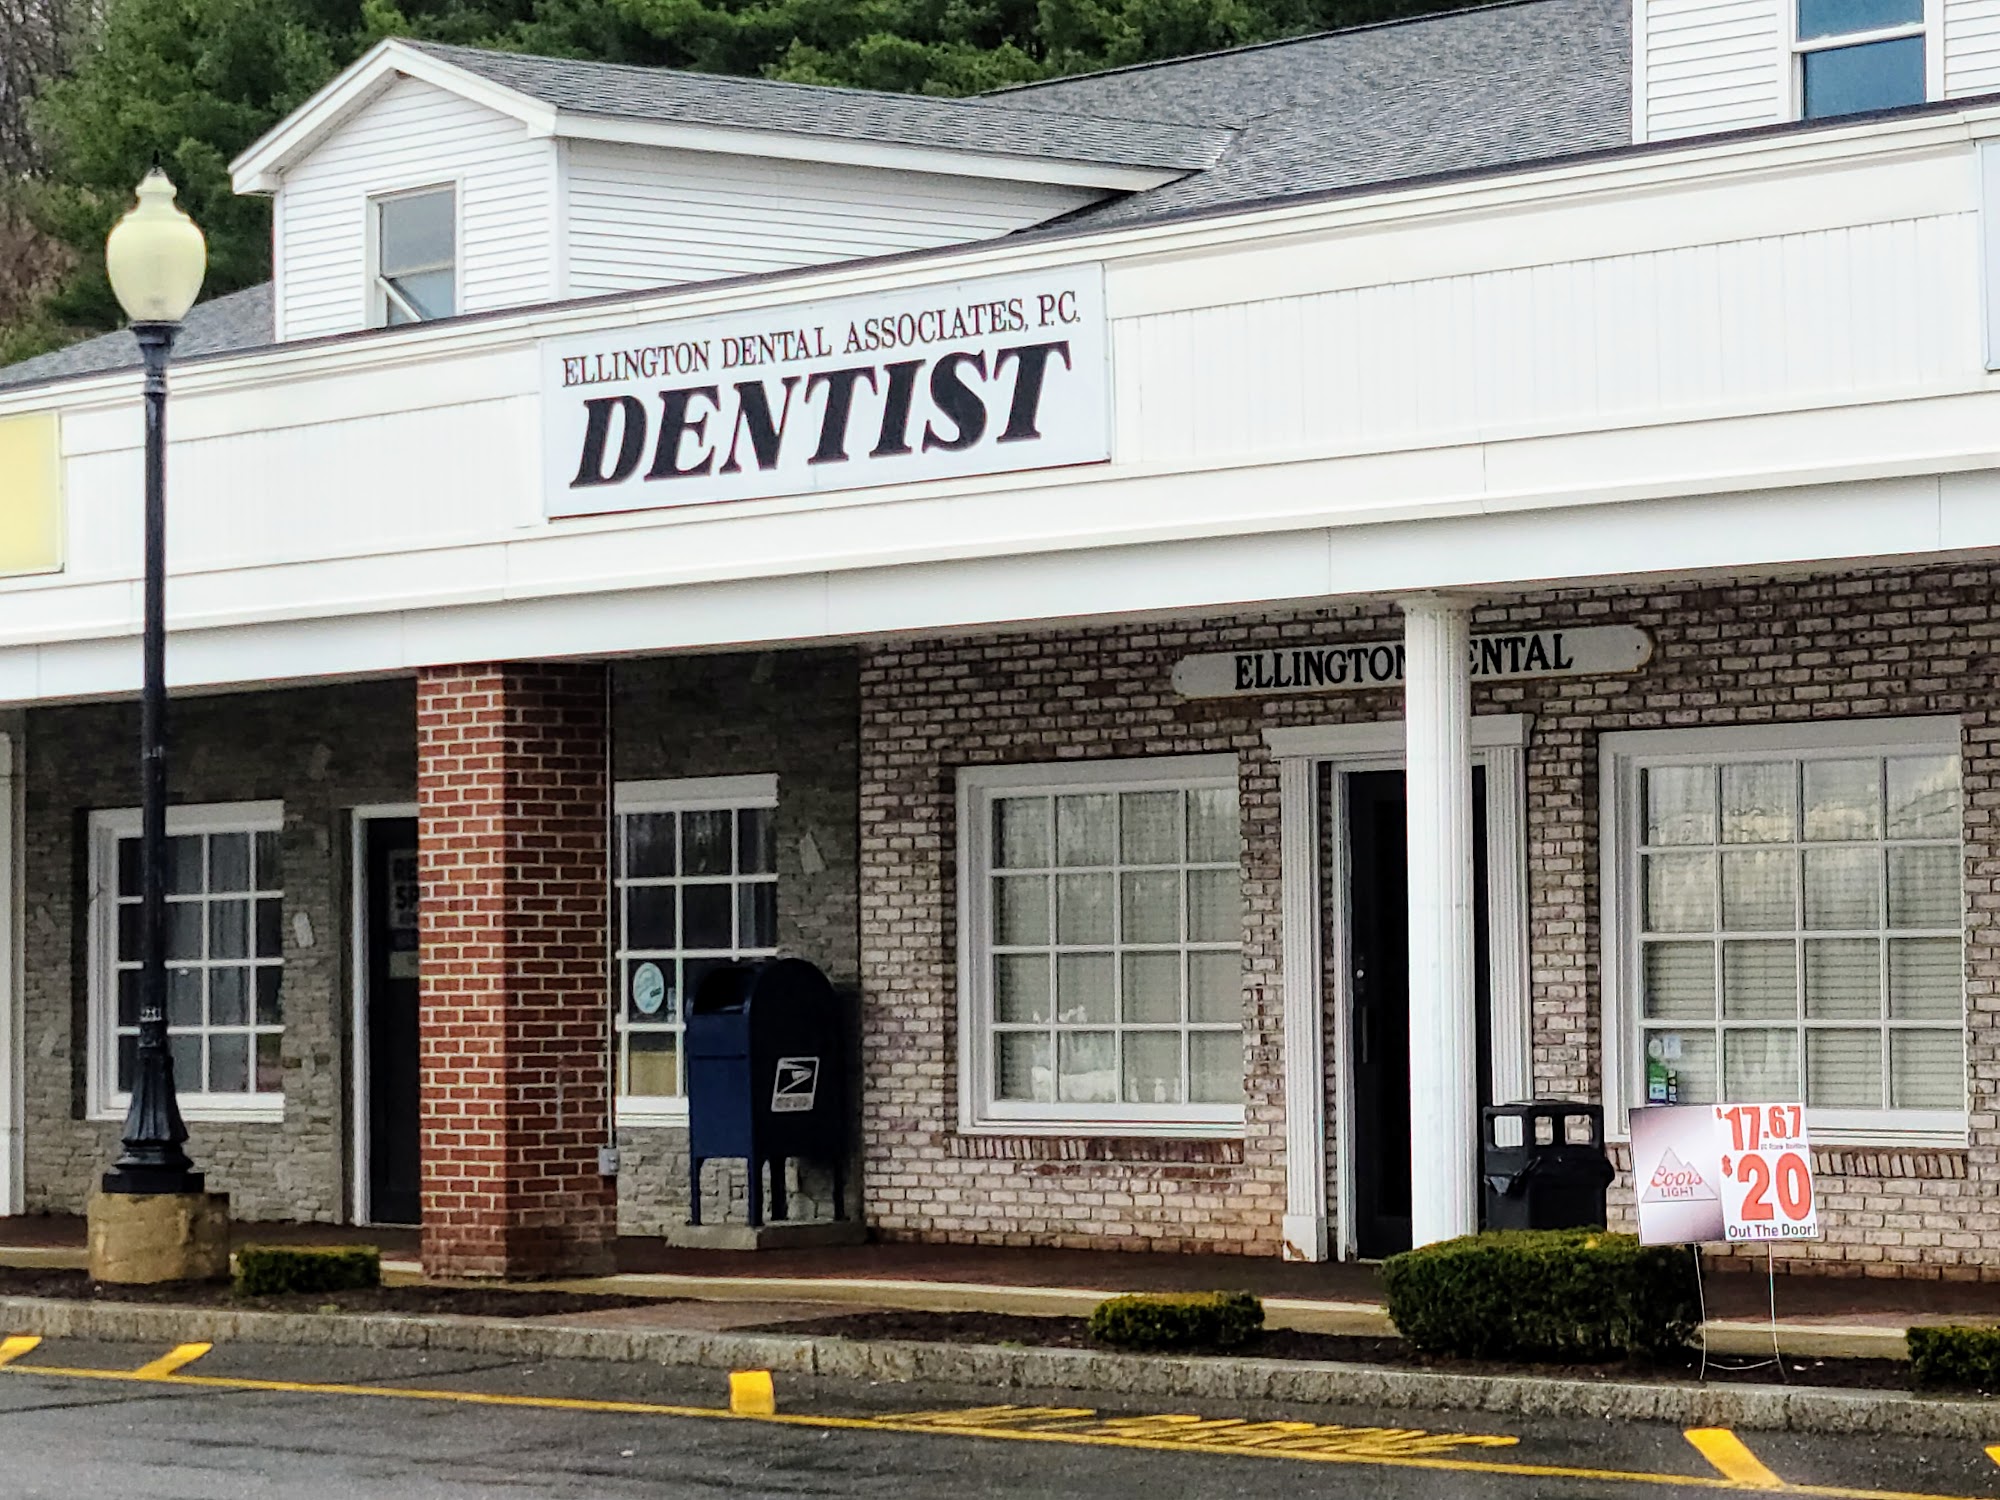 Ellington Dental Associates, P.C. 175 West Rd, Ellington Connecticut 06029